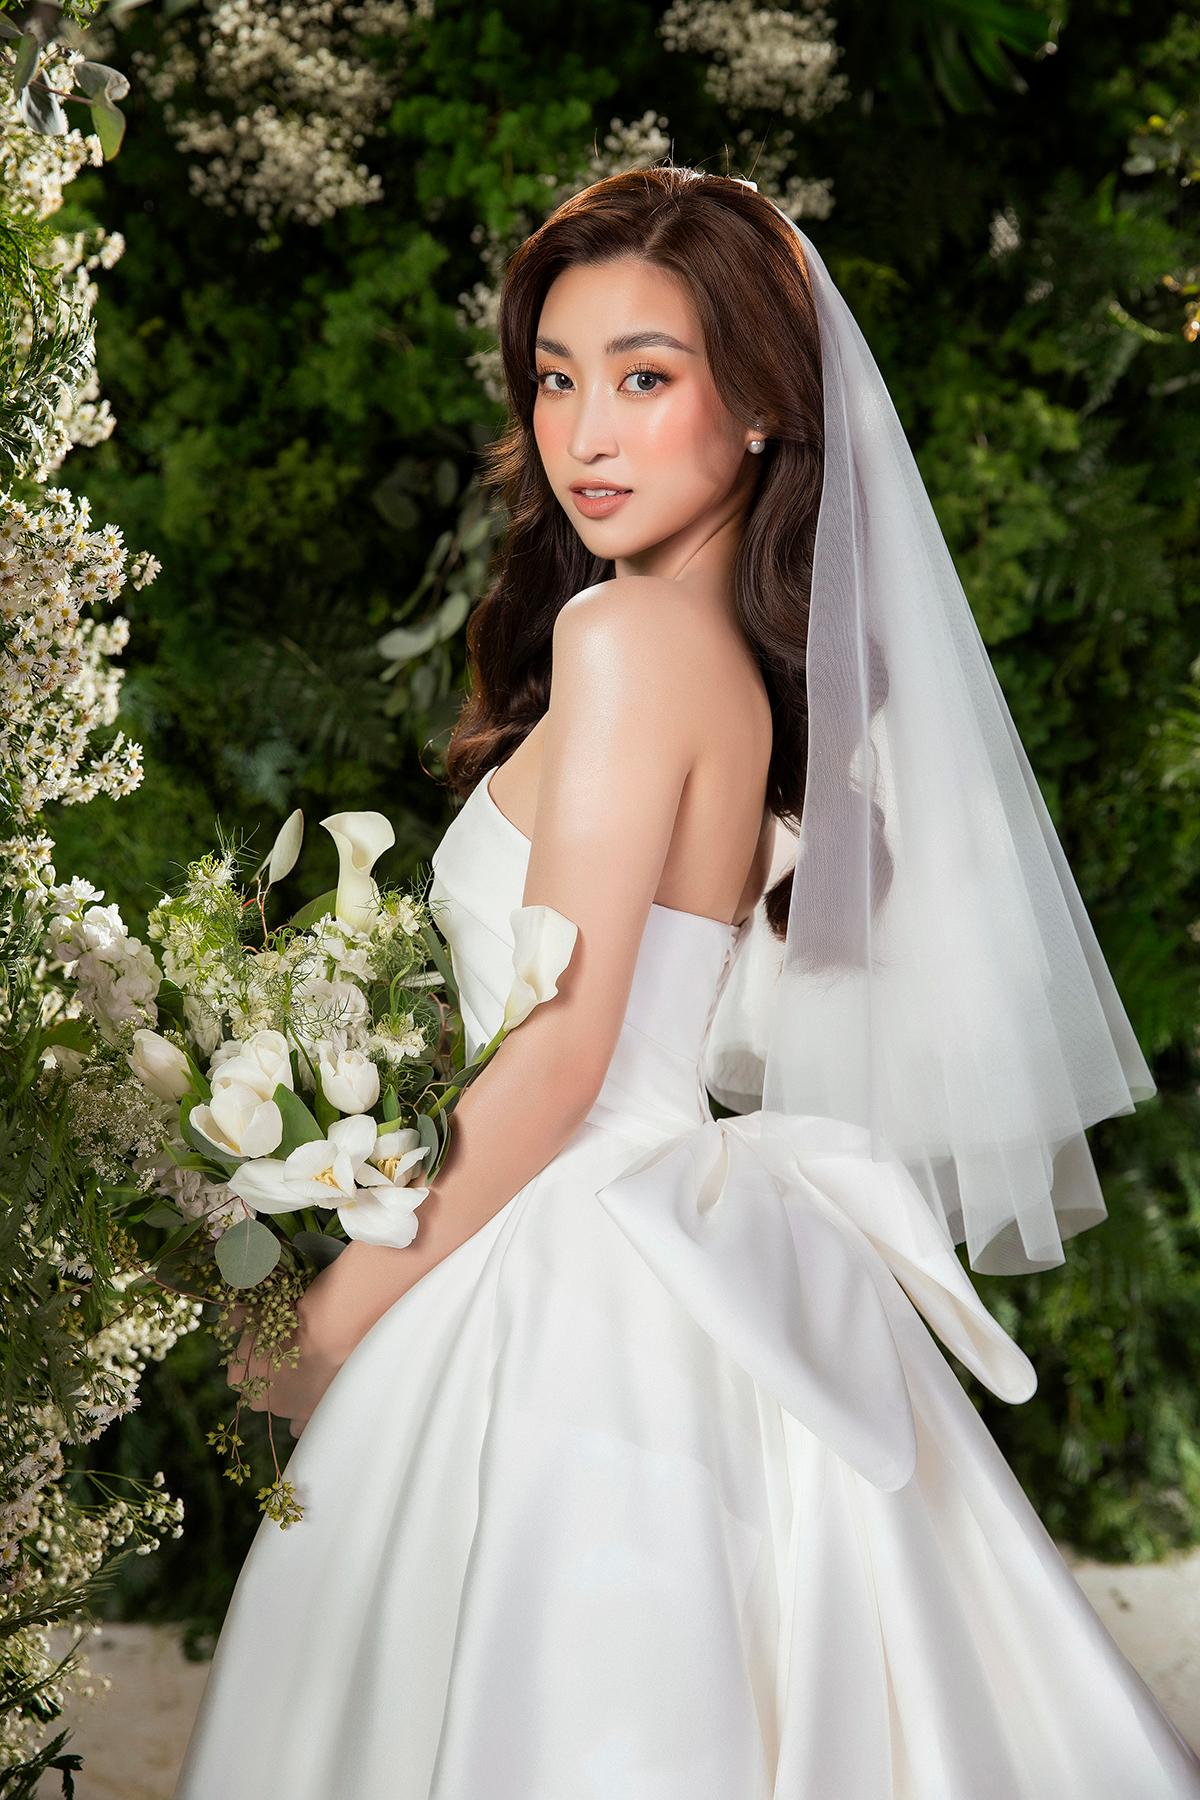 Hãy theo dõi những khoảnh khắc ngọt ngào và đầy lãng mạn của Hoa hậu Đỗ Mỹ Linh trong ngày trọng đại của cuộc đời cô ấy khi diện chiếc áo cưới tuyệt đẹp.